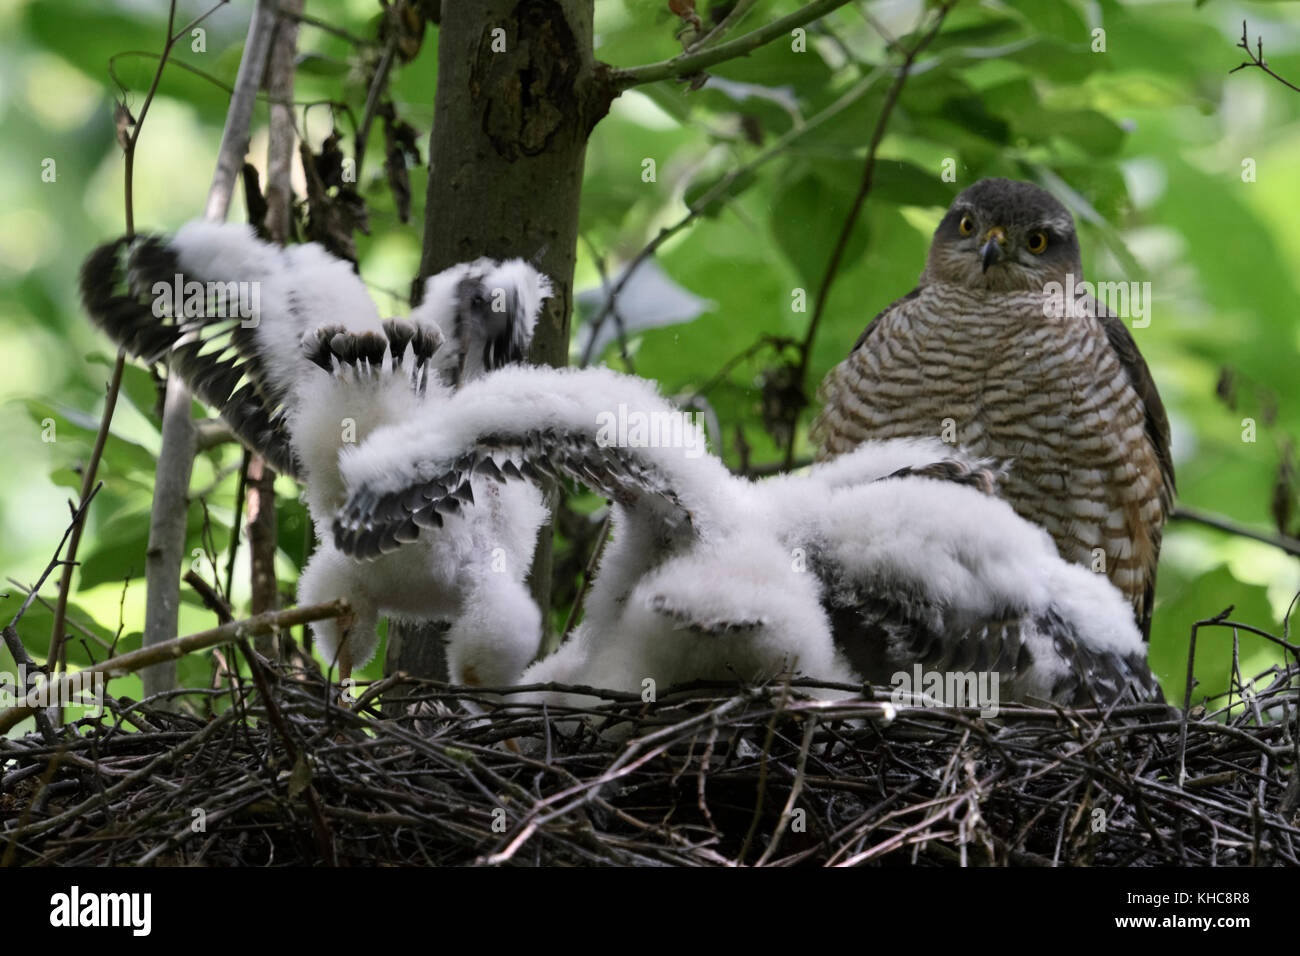 Gavilán ( Accipiter nisus ), hembra adulta viendo a sus jóvenes polluelos, aves jóvenes en formación nido, sacudiendo con alas, Europa. Foto de stock